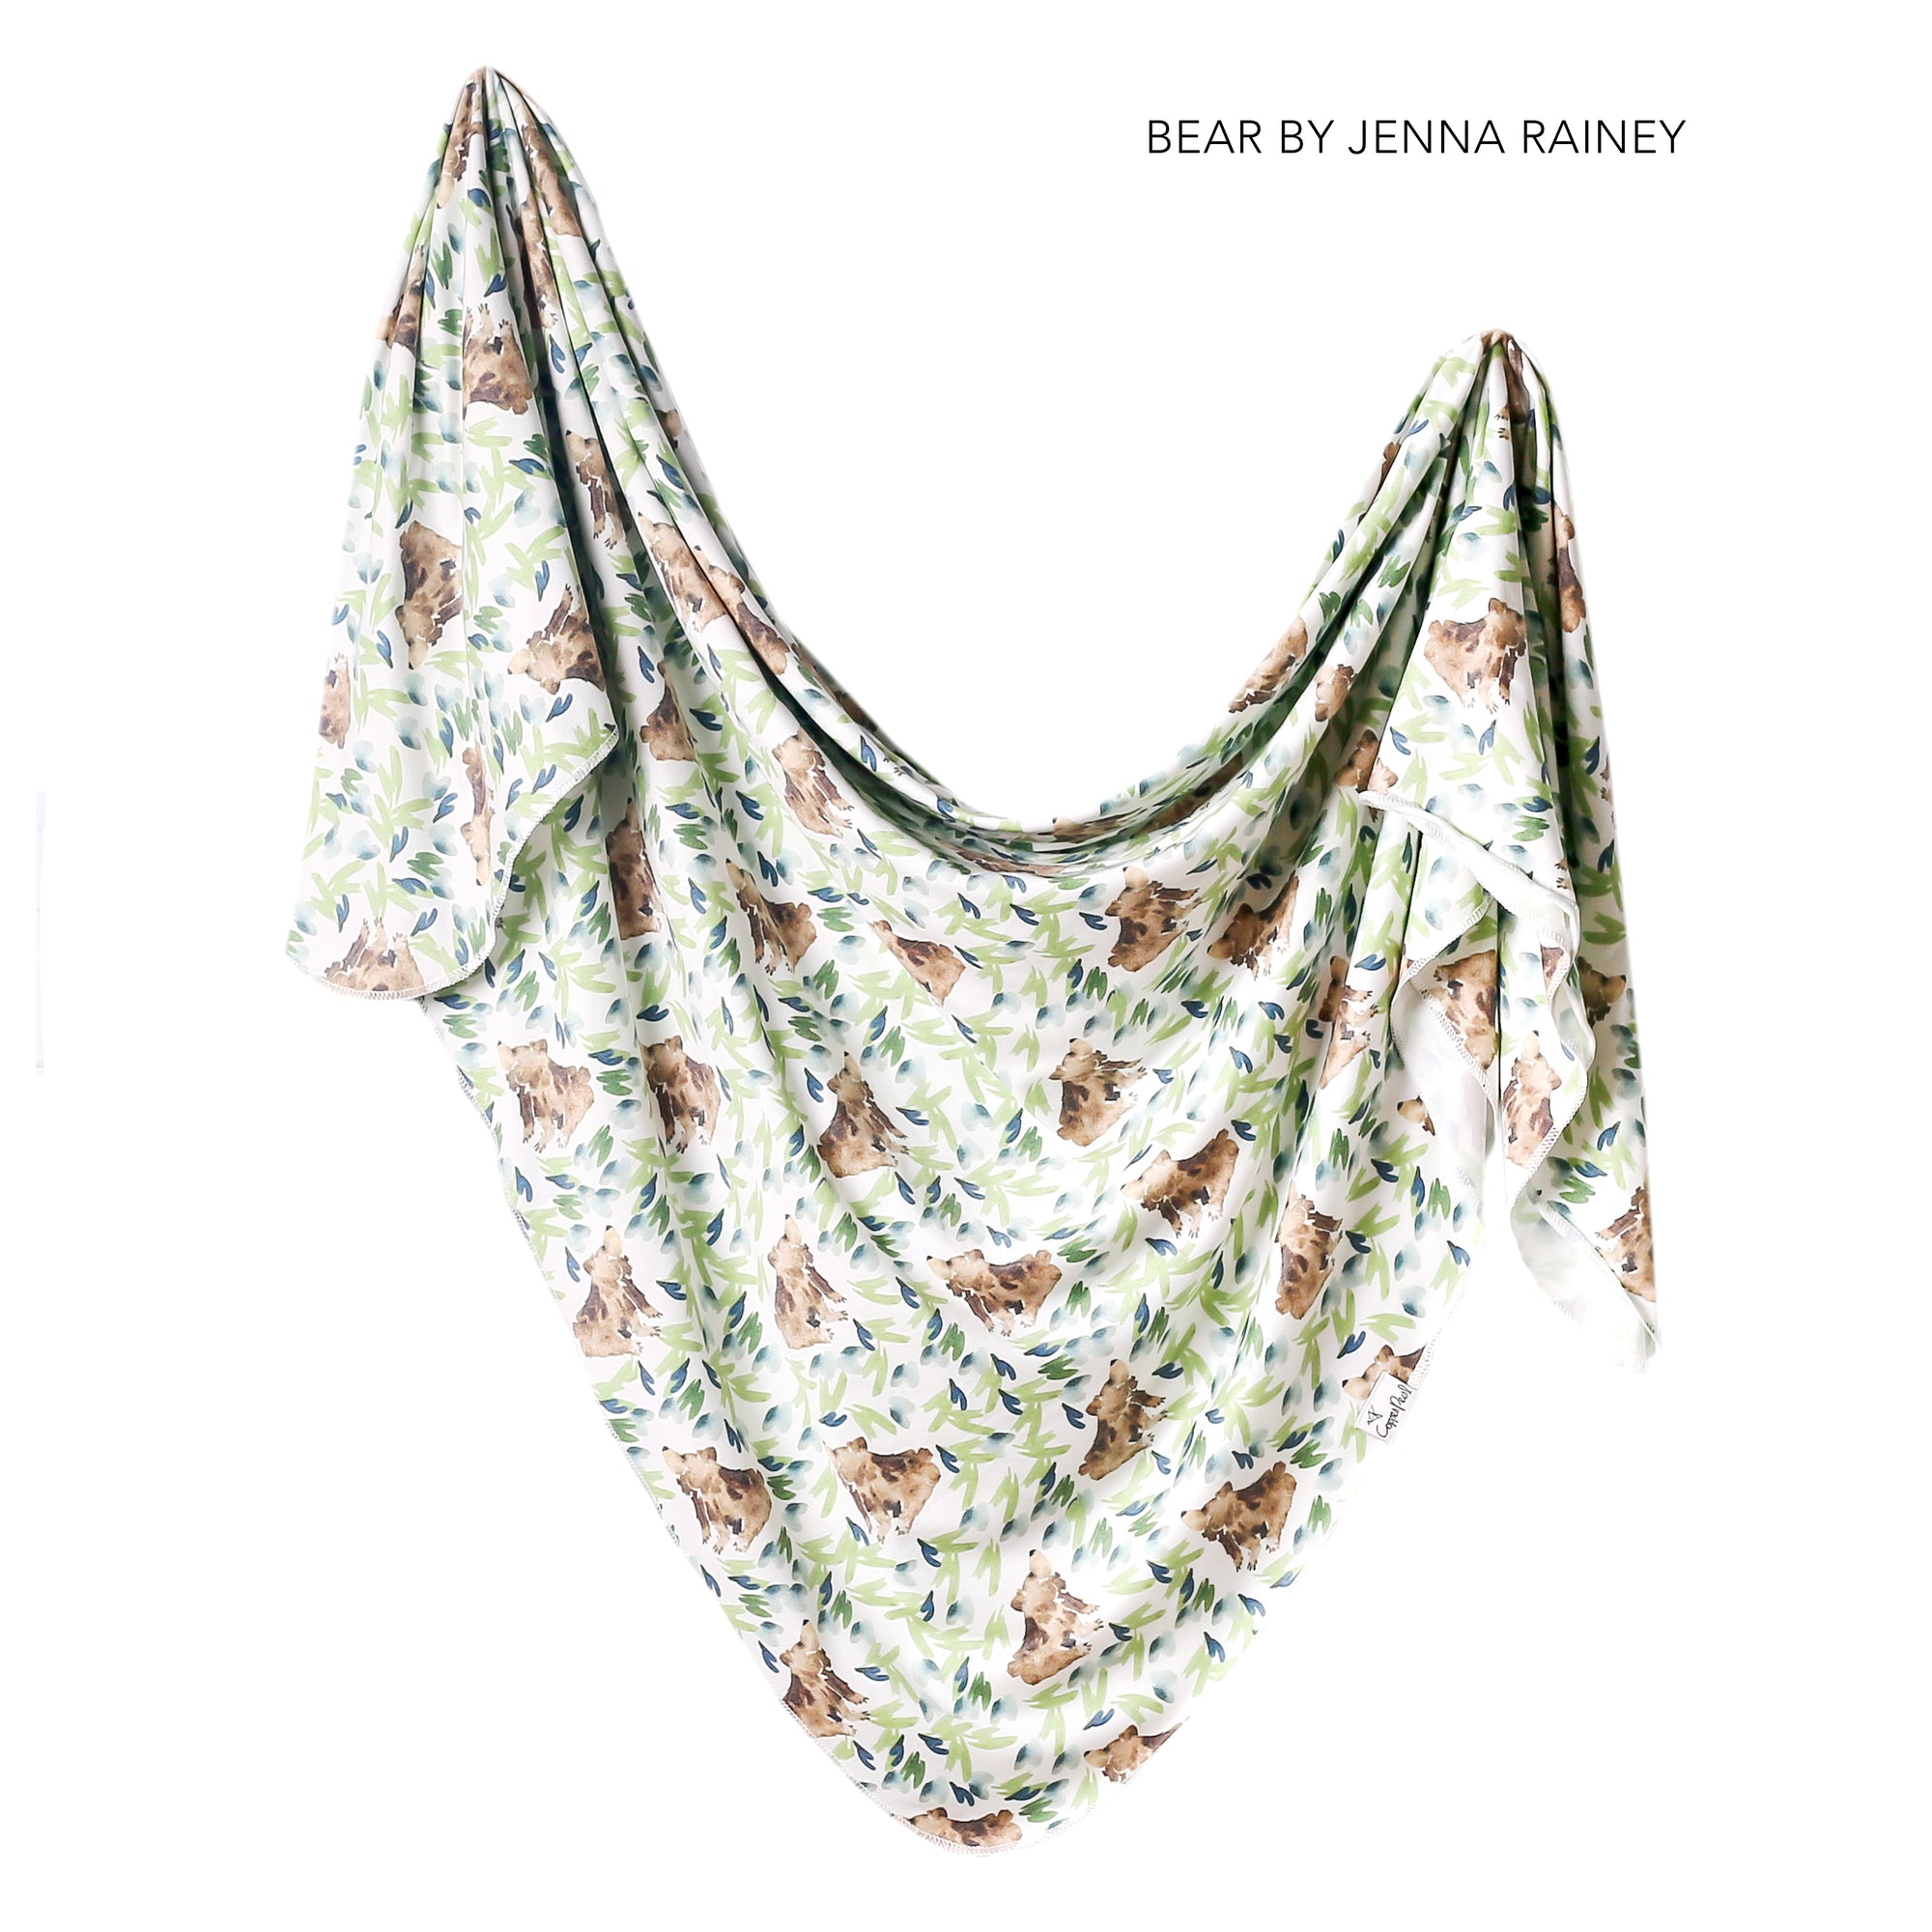 Knit Swaddle Blanket - Bear